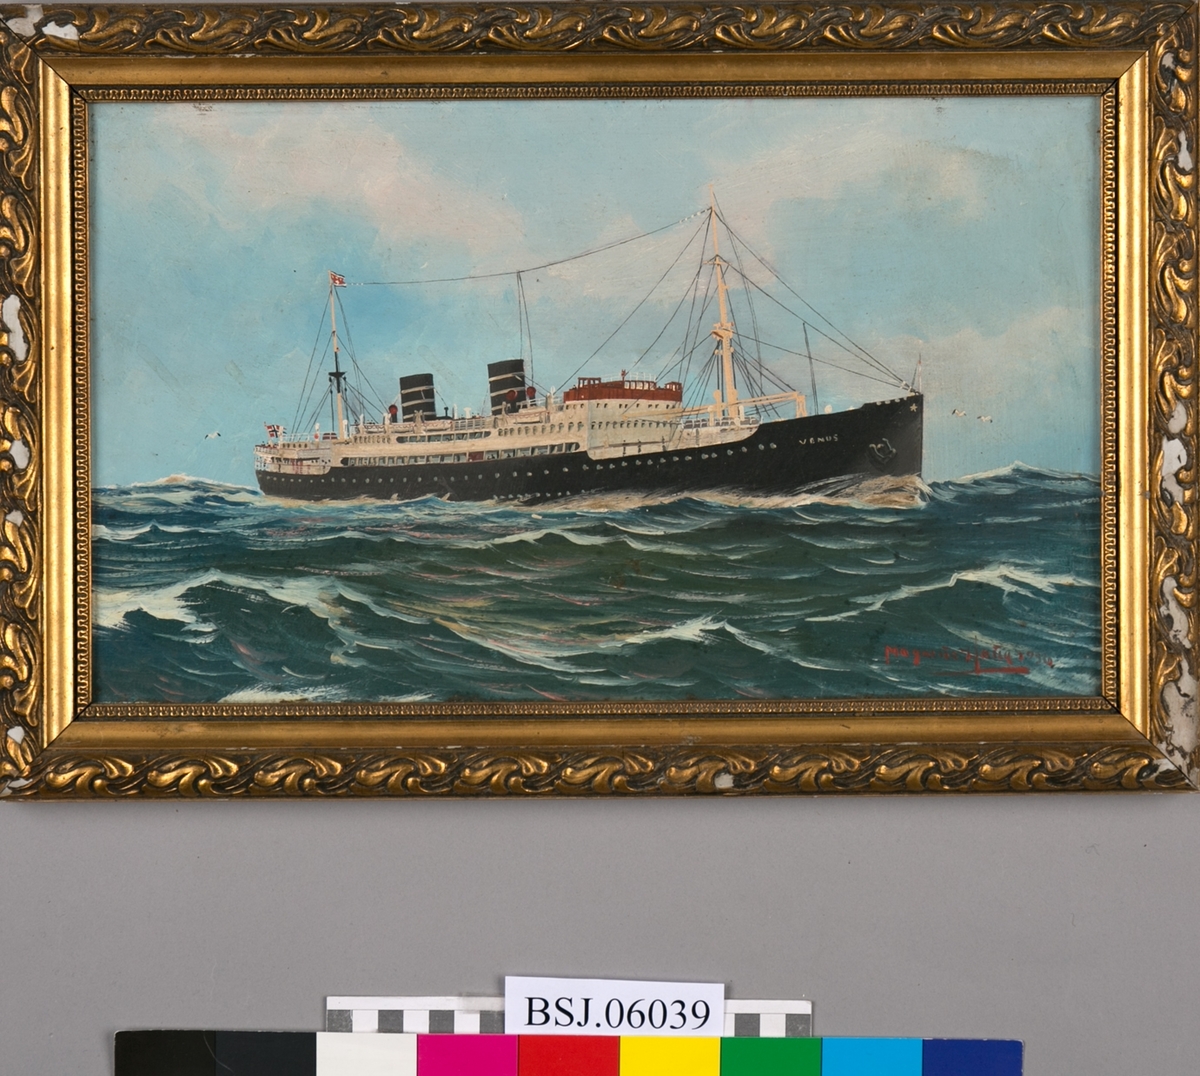 Skipsportrett av MS VENUS på åpent hav. Blå himmel og skyer, bølger med måker. Rederiflagg i bakre mast og norsk flagg i akter.